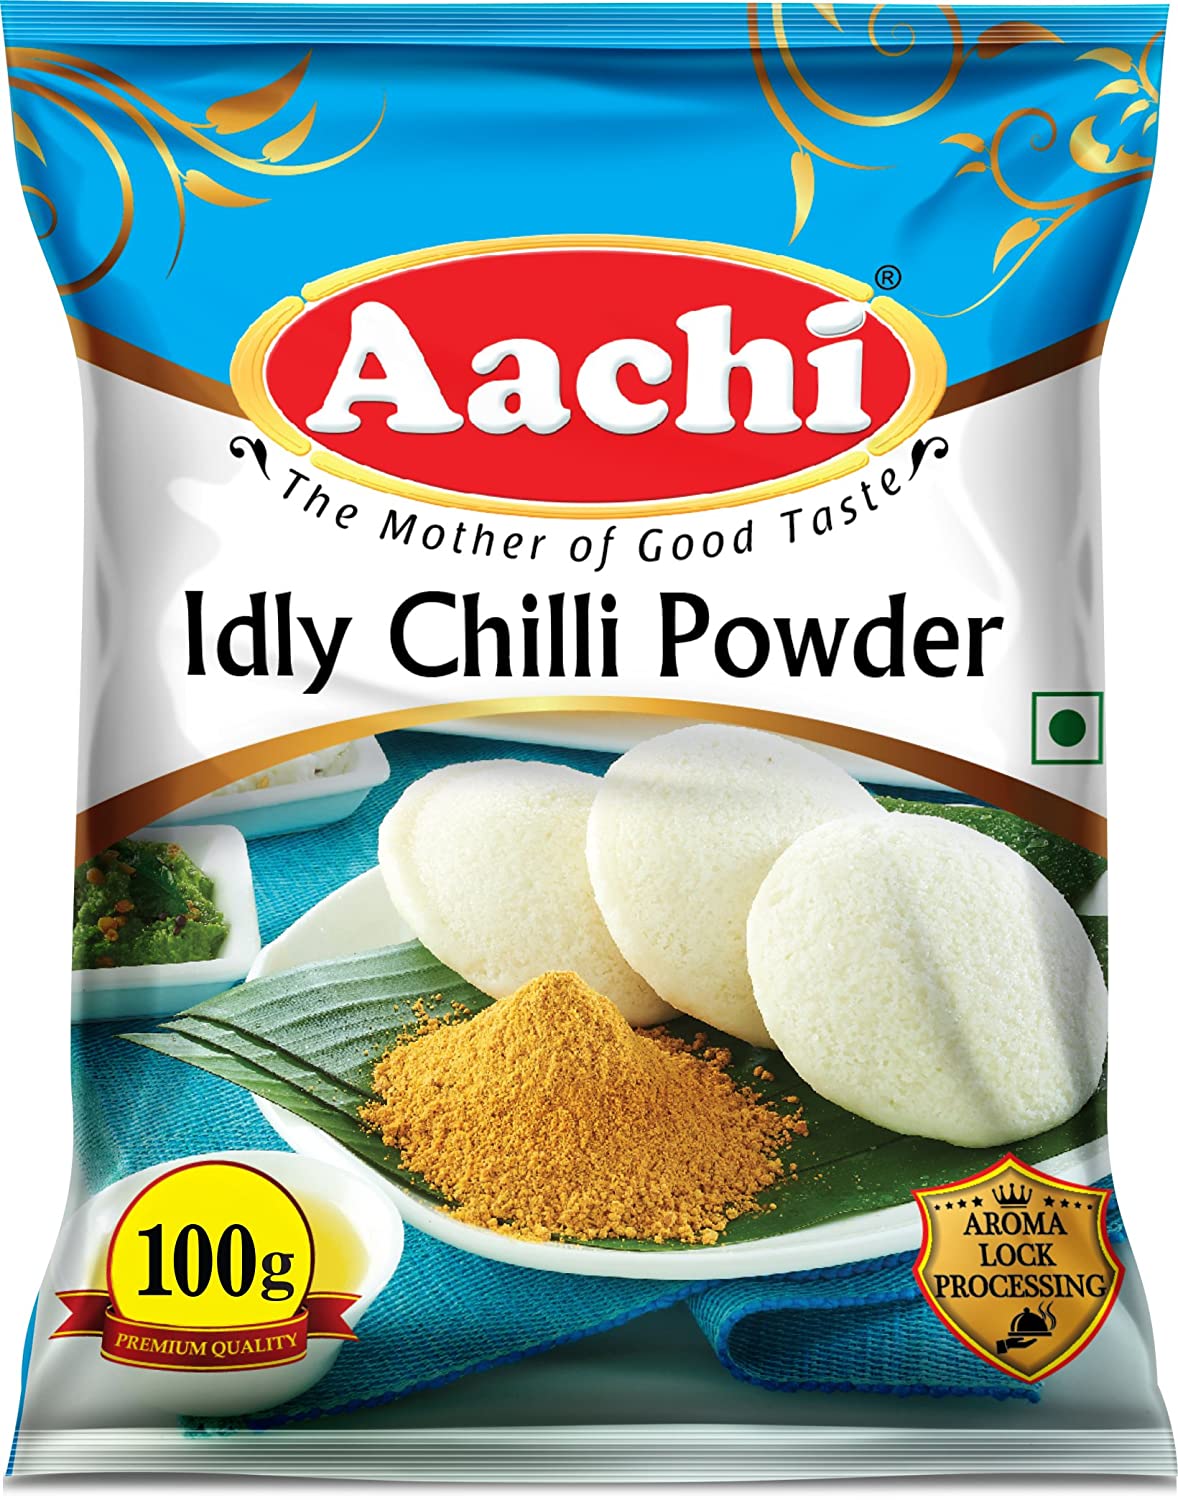 Aachi Idly Chilli Powder, 100g